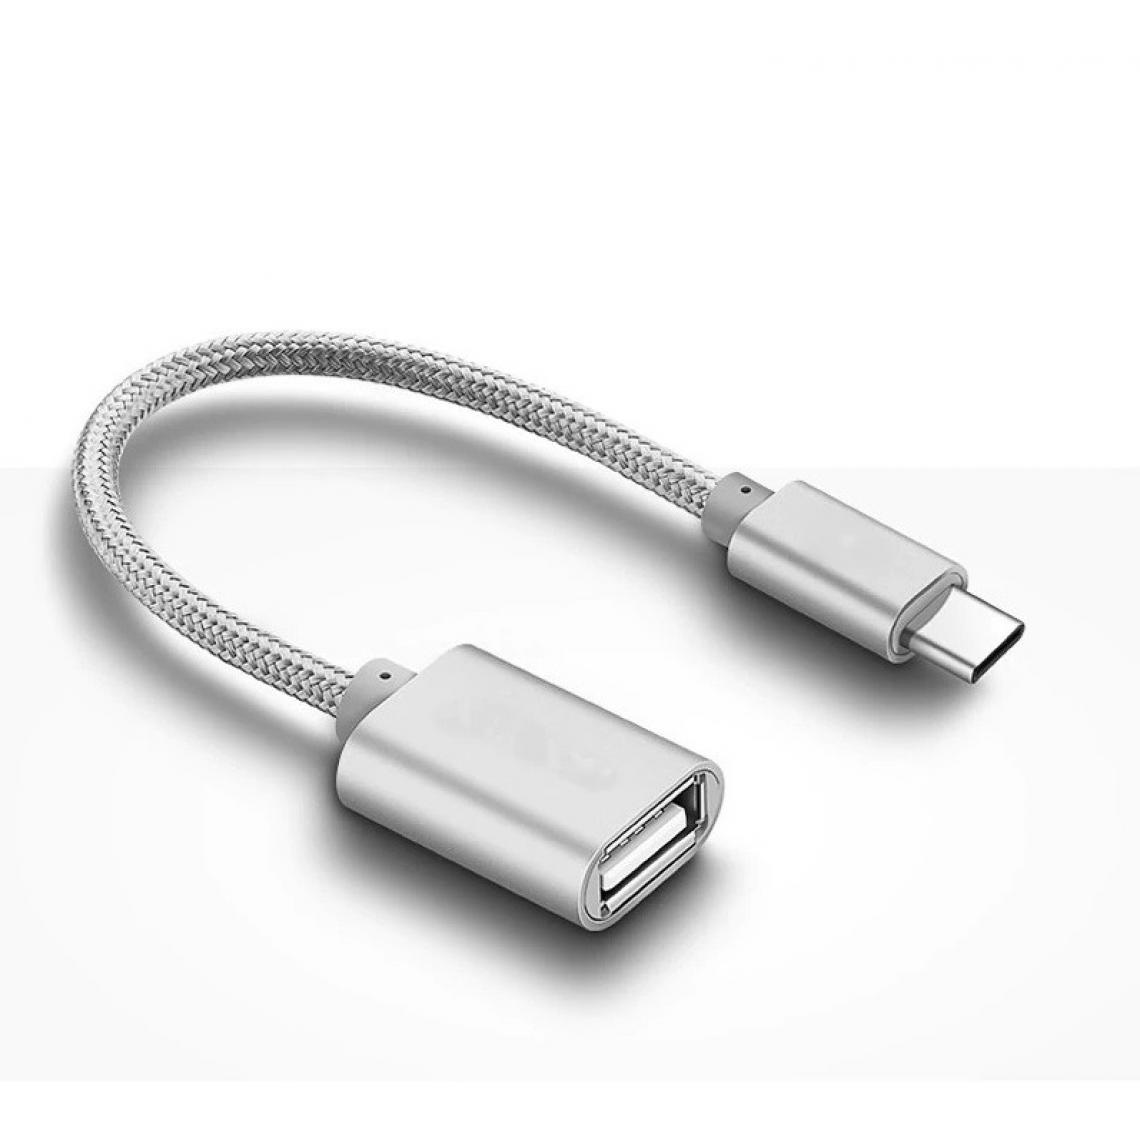 Shot - Adaptateur Type C/USB pour NEXTBIT Robin Smartphone & MAC USB-C Clef (ARGENT) - Autres accessoires smartphone